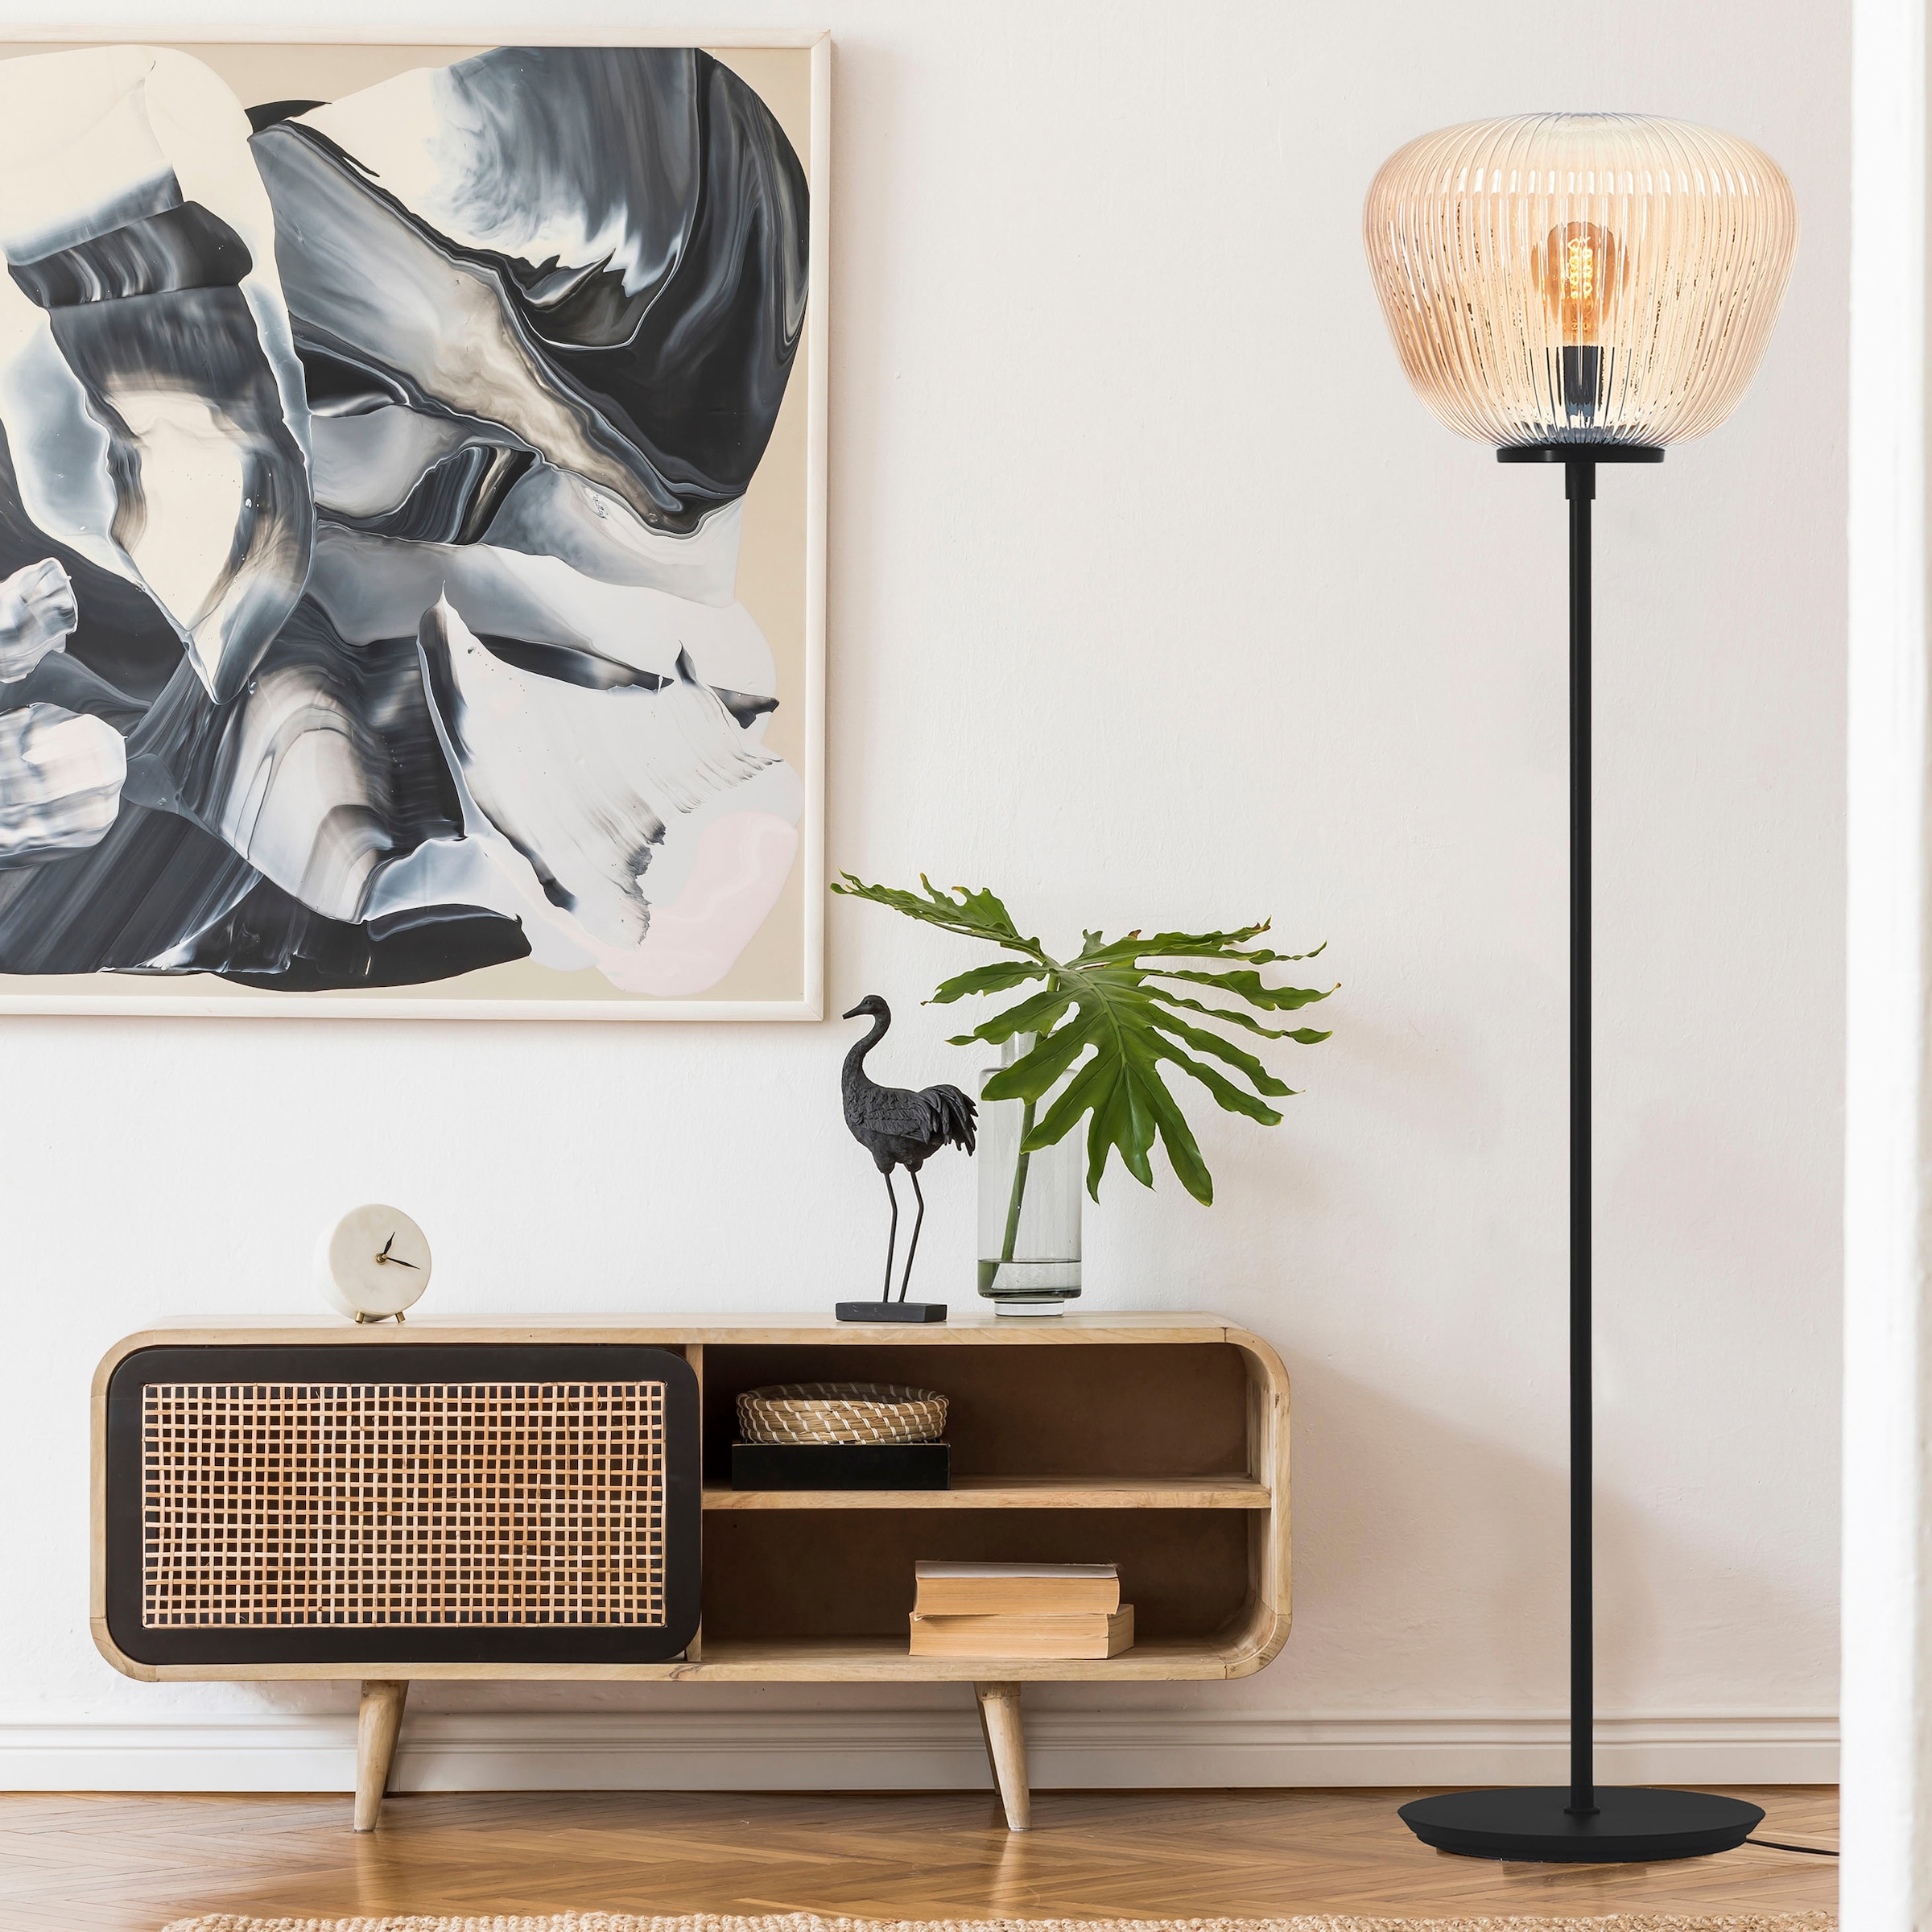 Brilliant Stehlampe »Kaizen«, 1 flammig-flammig, Riffelglas, 140 x 35 cm, E27, Amber-Bernsteinfarben